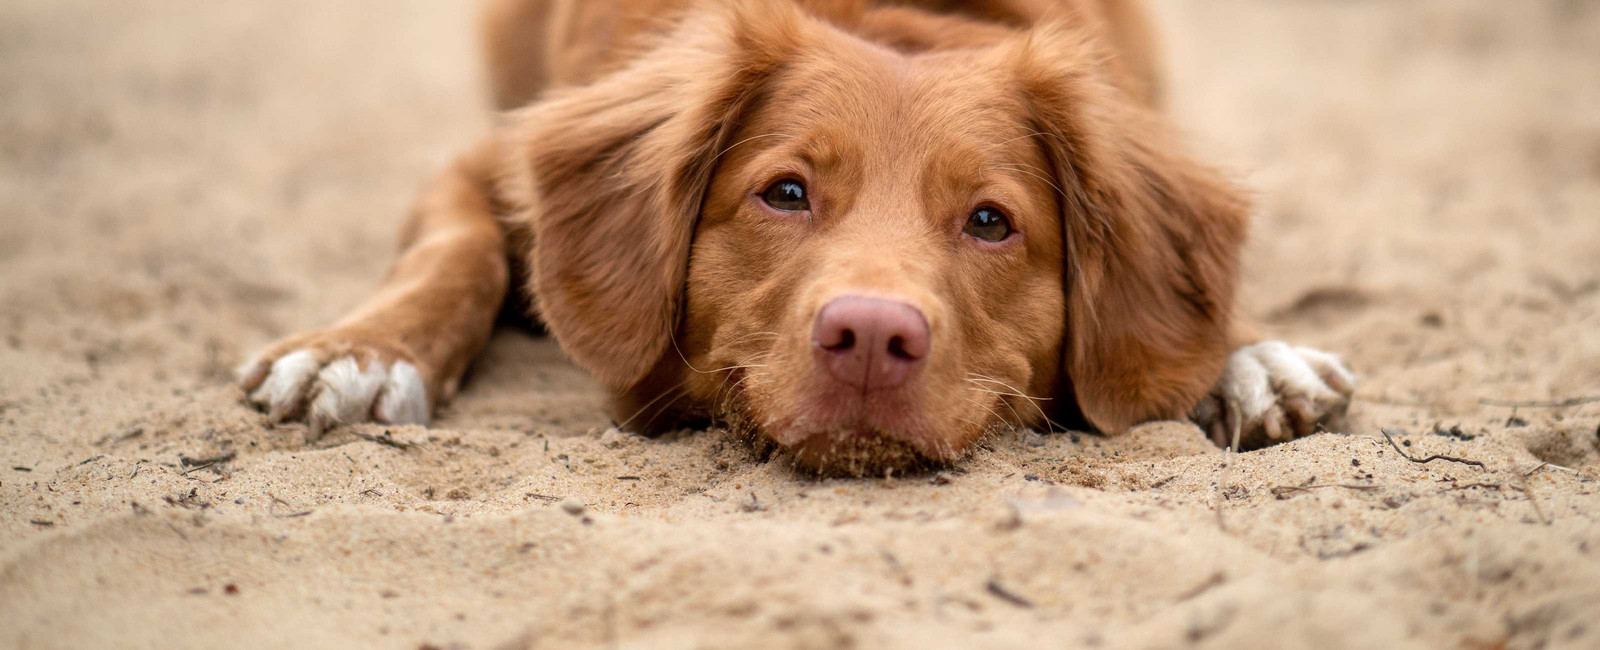 Dürfen Hunde Kohlrabi essen was sollten Sie beachten?